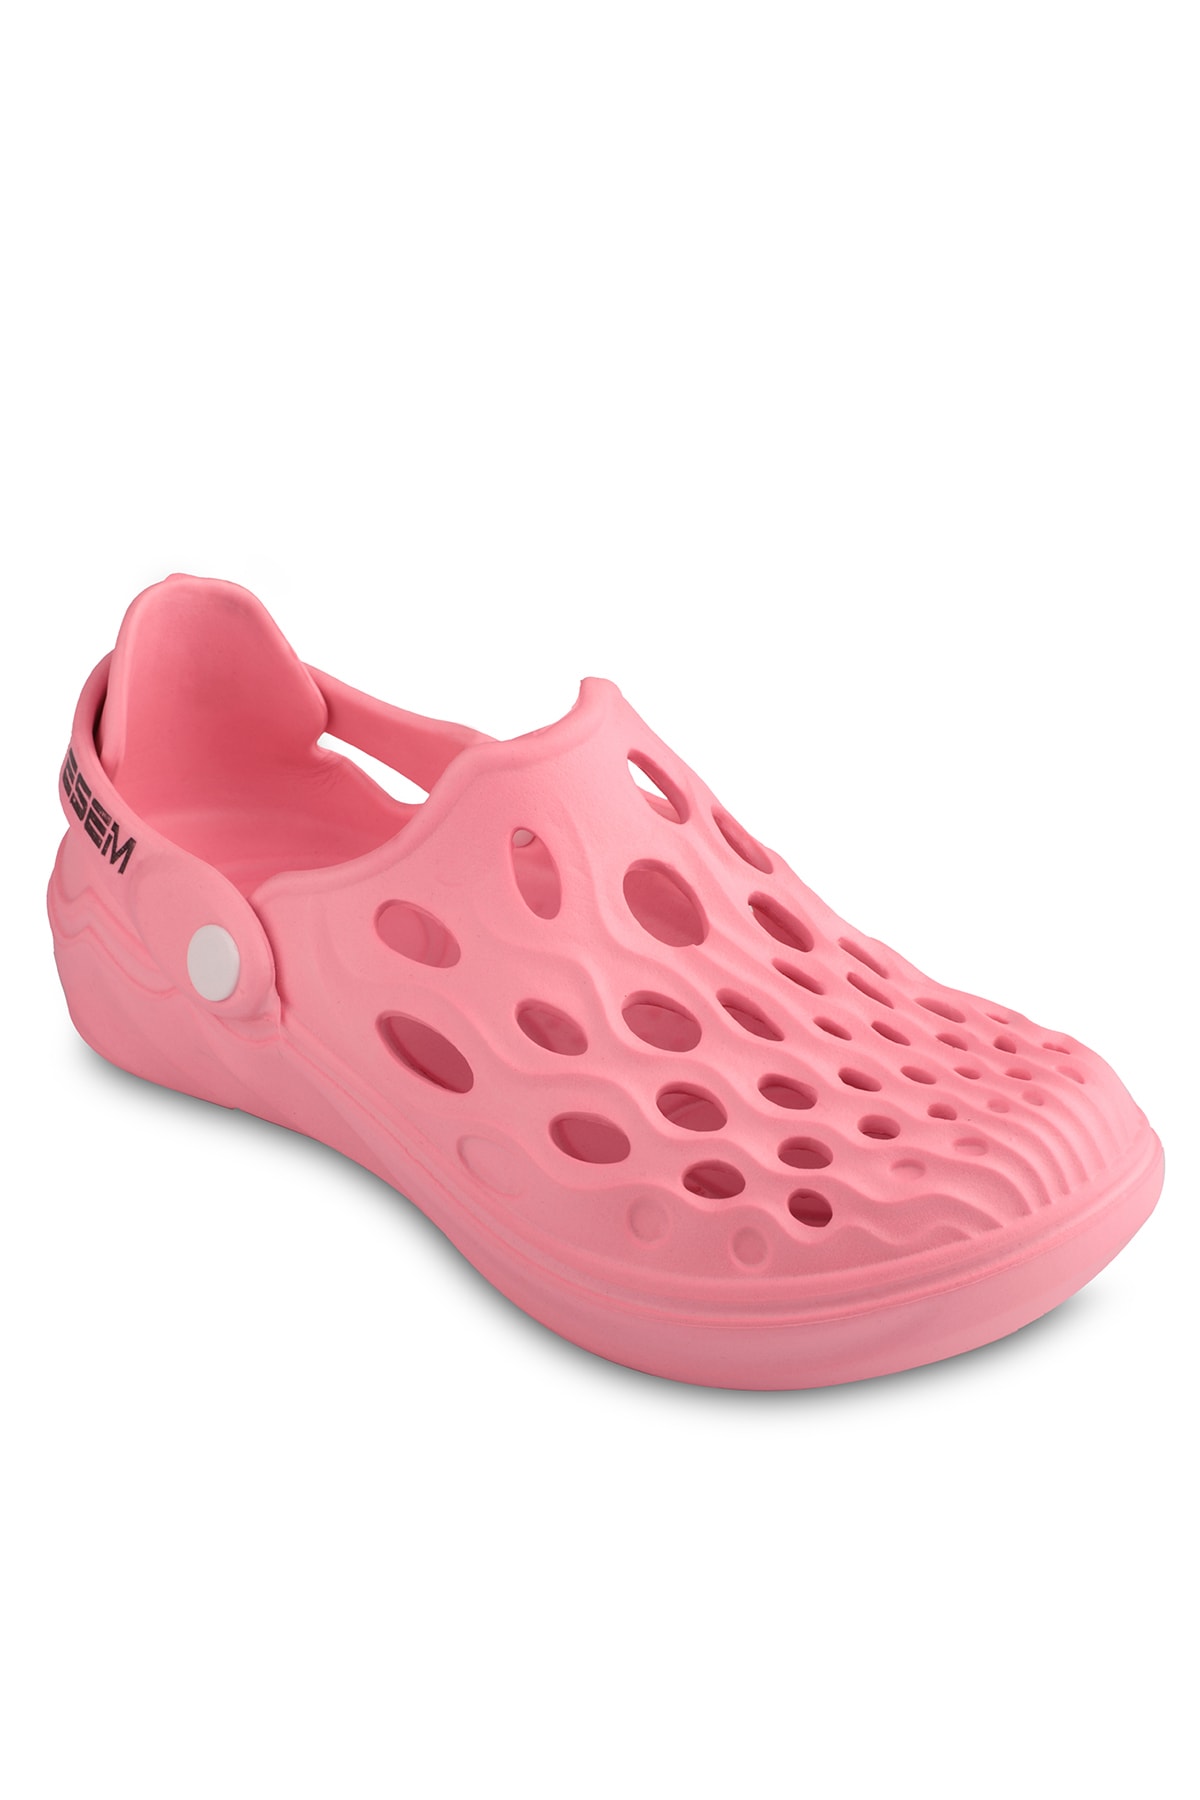 Esem E279.z.000 Women's Pink Slippers